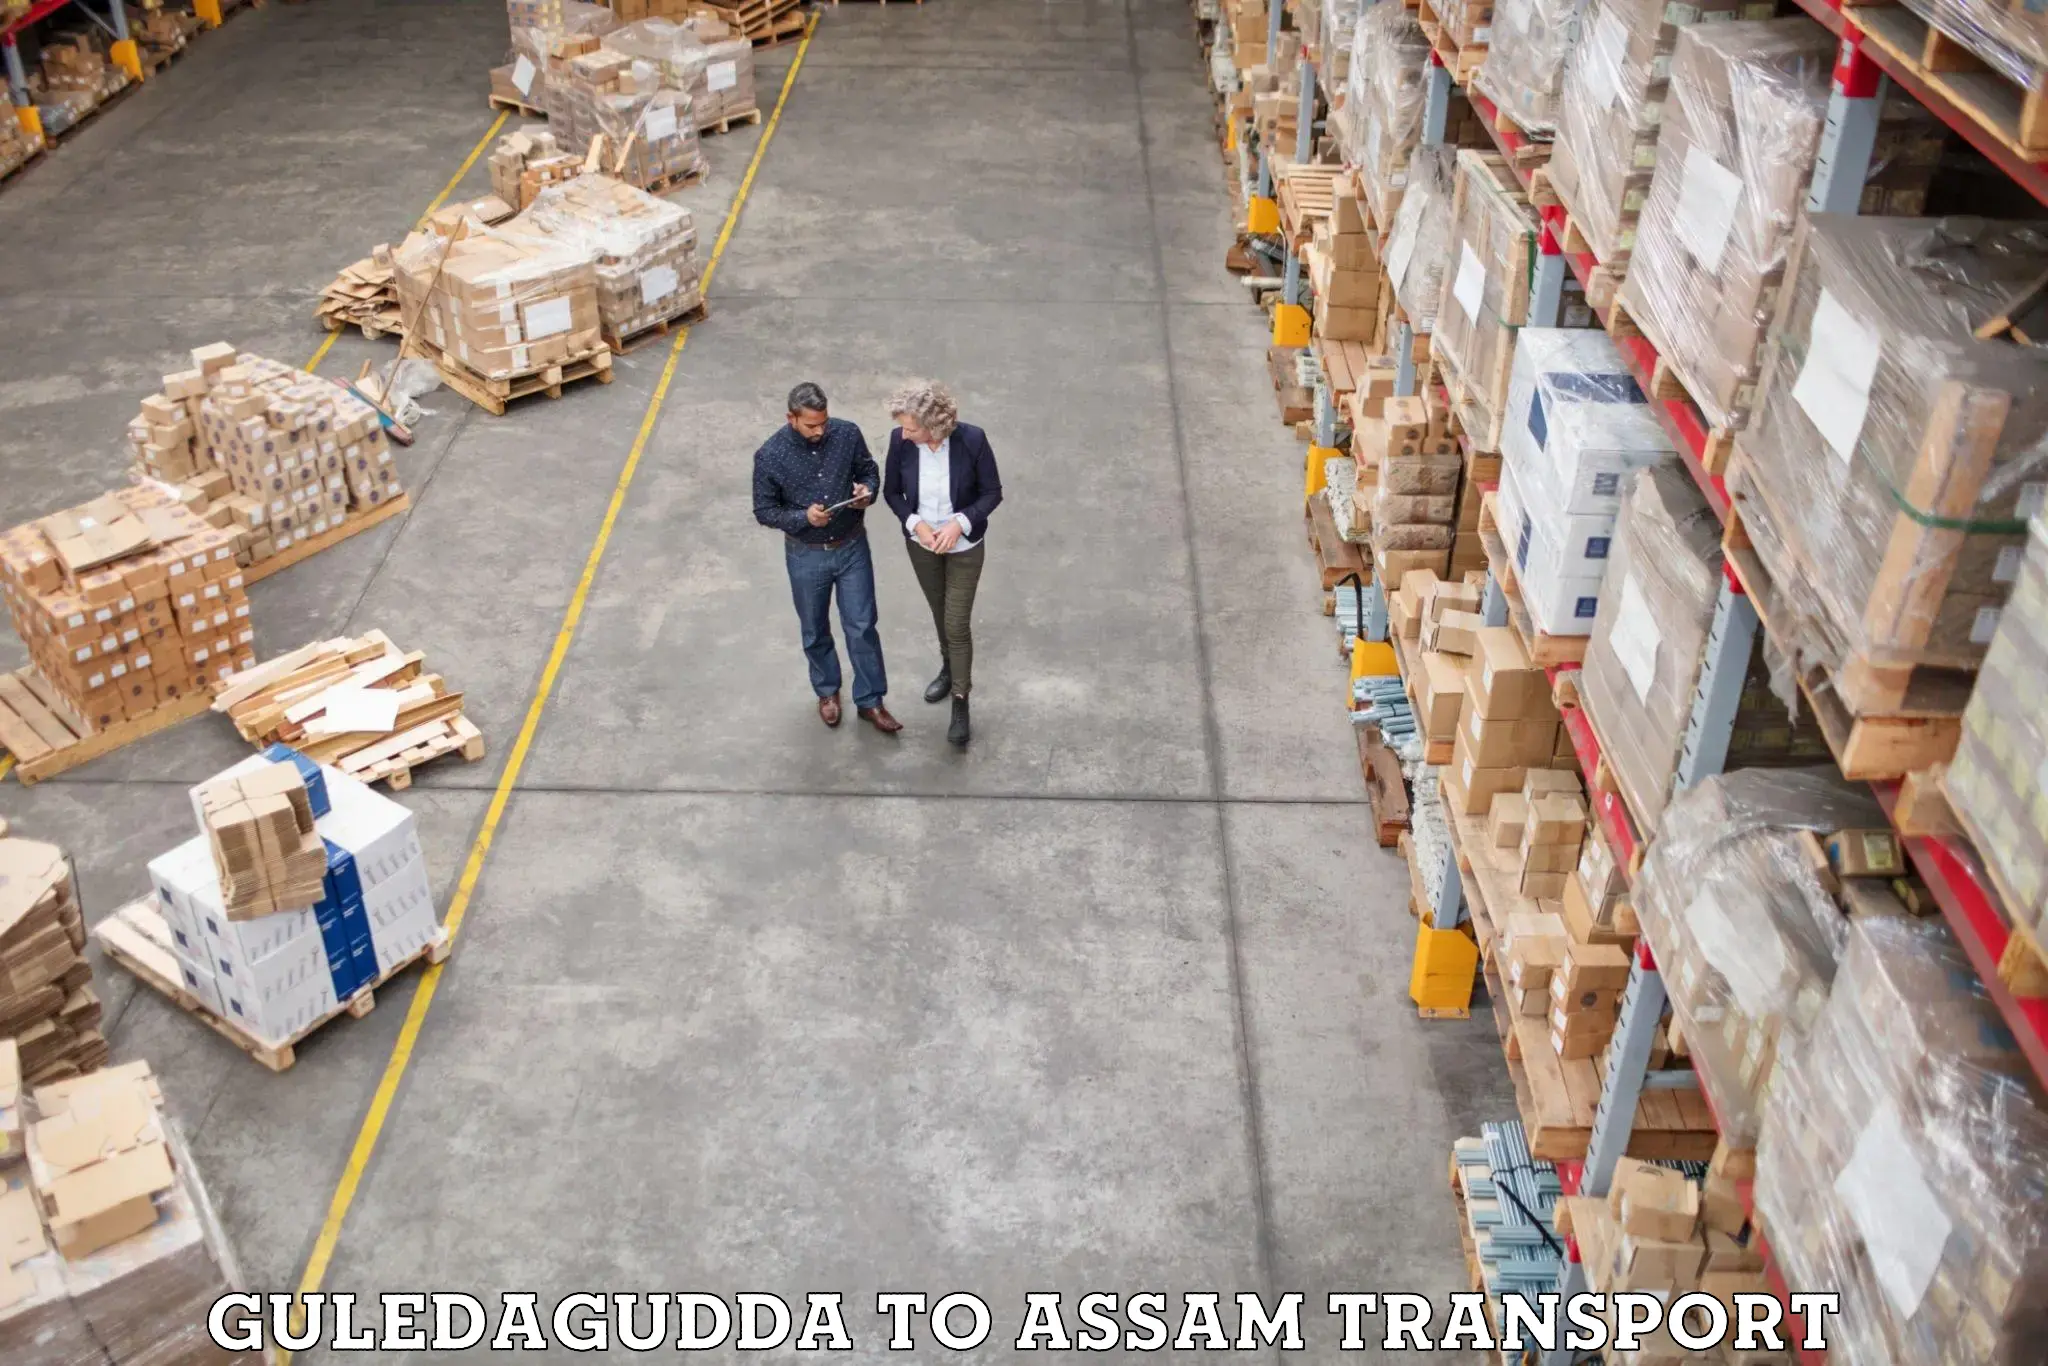 Container transport service Guledagudda to Nalbari